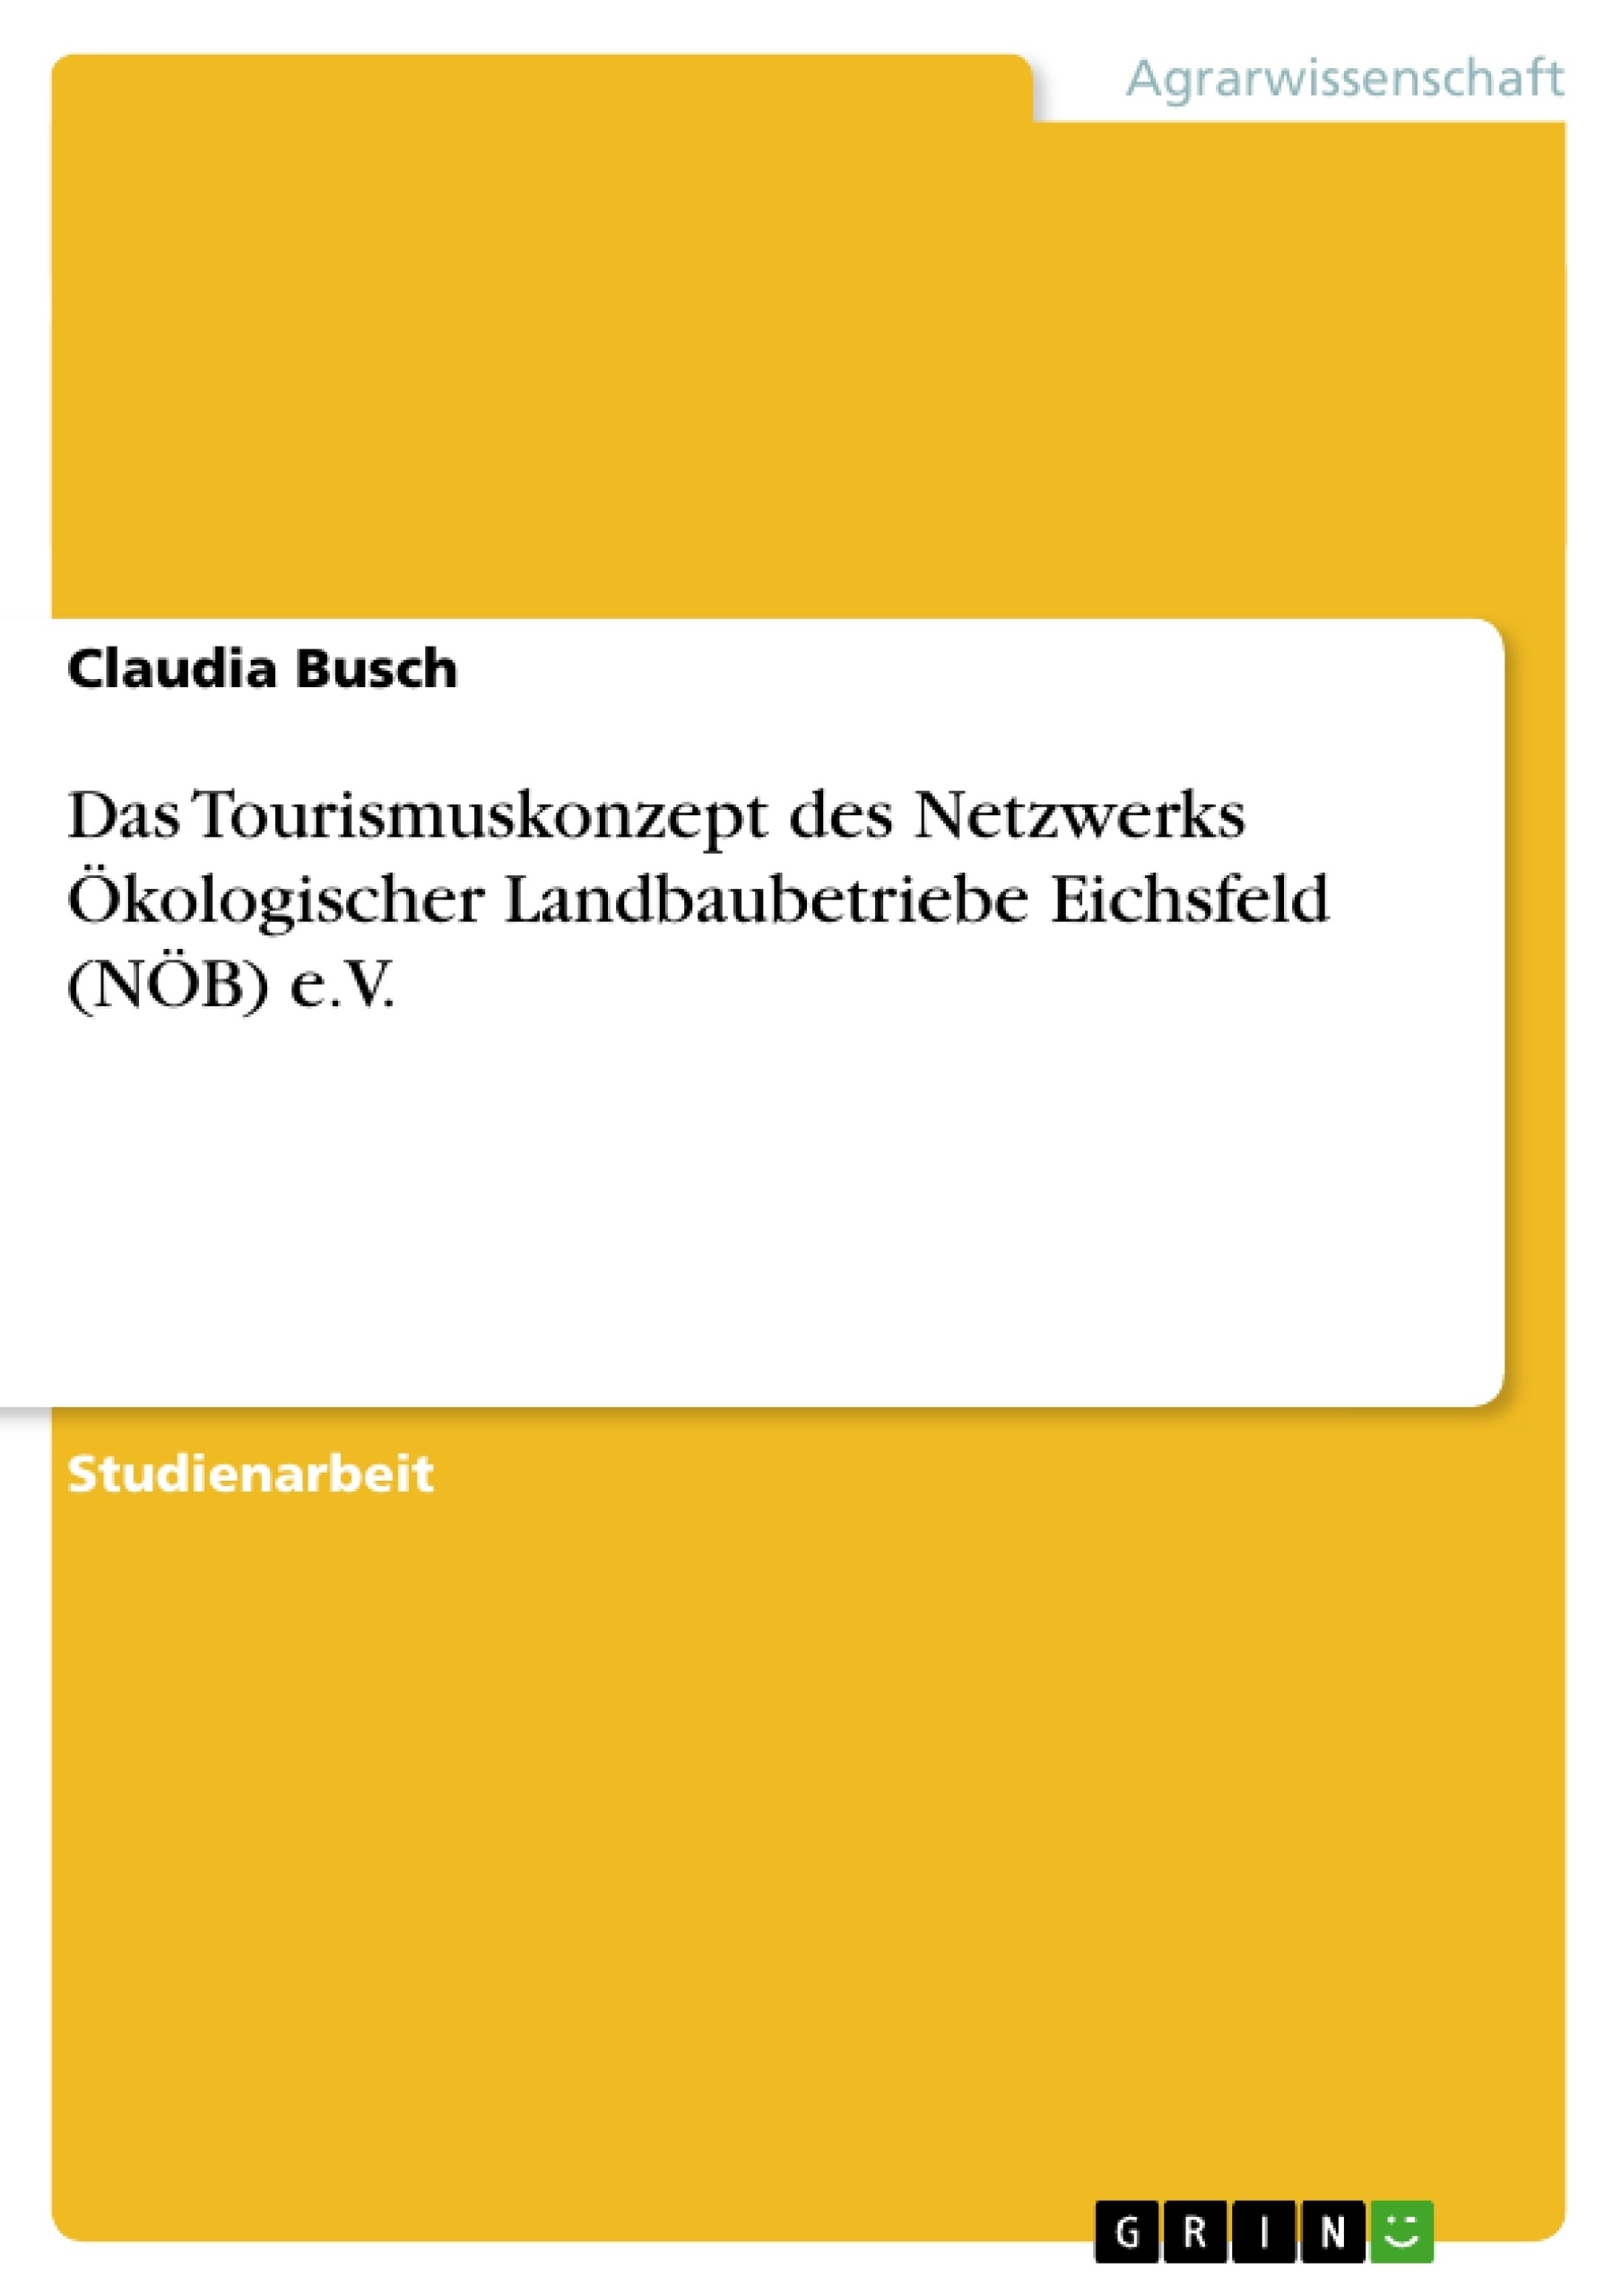 Titre: Das Tourismuskonzept des Netzwerks Ökologischer Landbaubetriebe Eichsfeld (NÖB) e.V.